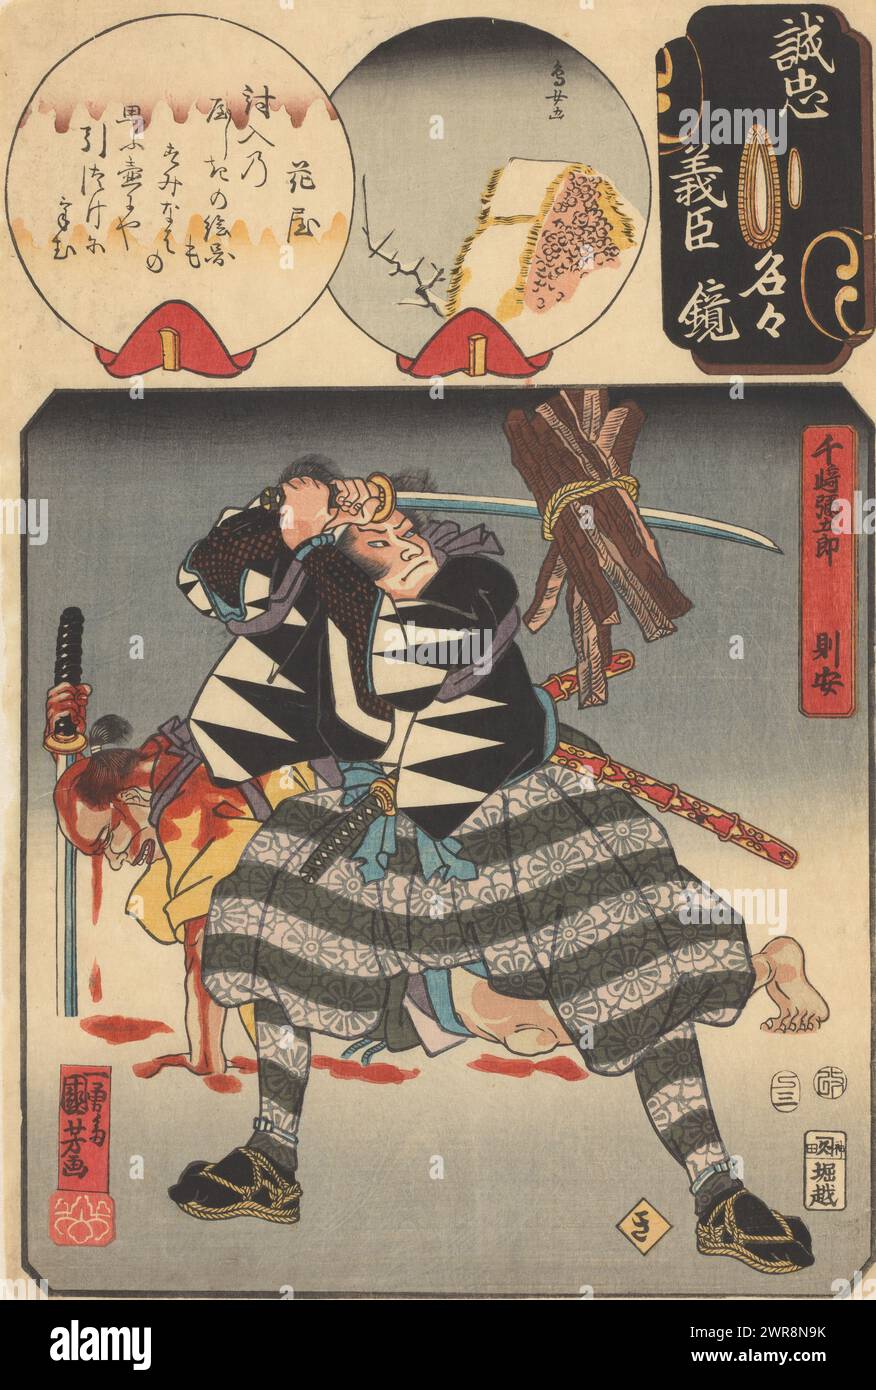 Senzaki Yagorô Noriyasu frappe un paquet de bois, la syllabe Ki : Senzaki Yagorô Noriyasu, miroir de la véritable loyauté de chacun des fidèles obligés (titre de la série sur objet), Senzaki Yagorô Noriyasu frappe son épée à travers des morceaux de bois attachés ensemble avec une corde. Dans le fond un homme saignant lourdement avec une épée., imprimeur : Utagawa Kuniyoshi, Japon, mars-1857, papier, gravure sur bois couleur, hauteur 372 mm × largeur 257 mm, impression Banque D'Images